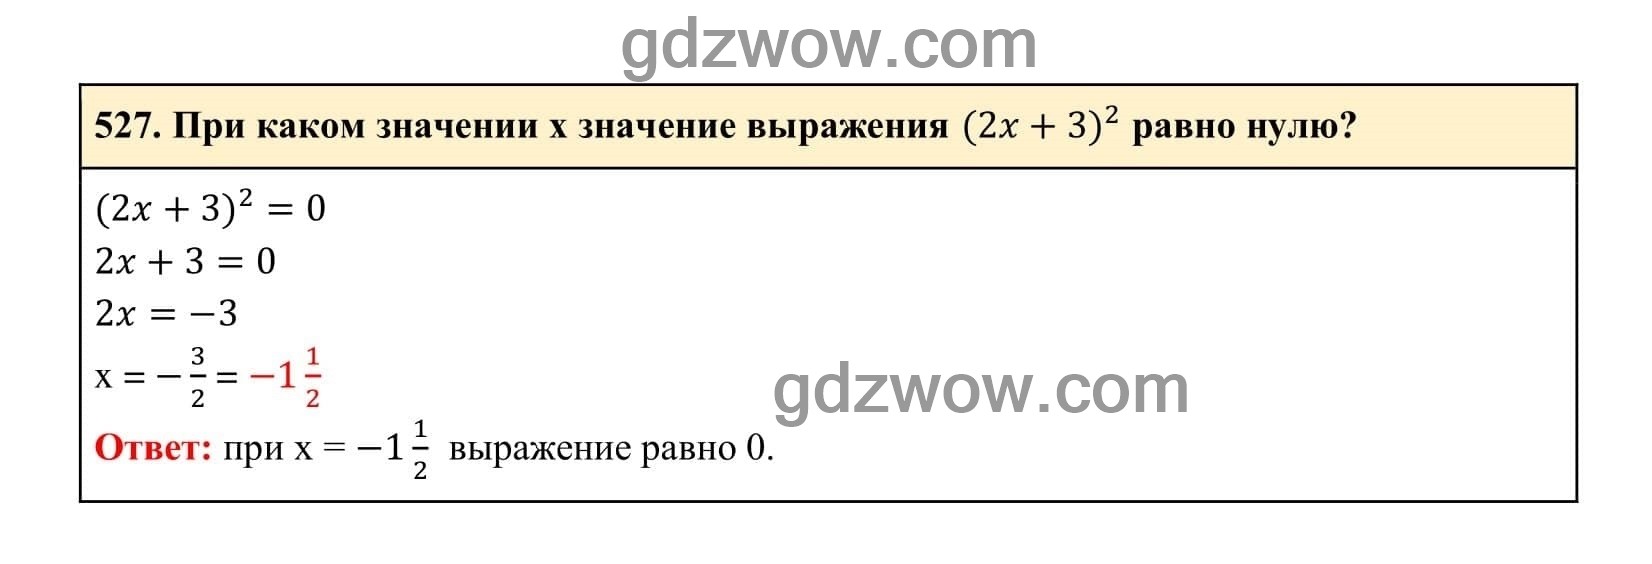 Упражнение 527 - ГДЗ по Алгебре 7 класс Учебник Макарычев (решебник) - GDZwow